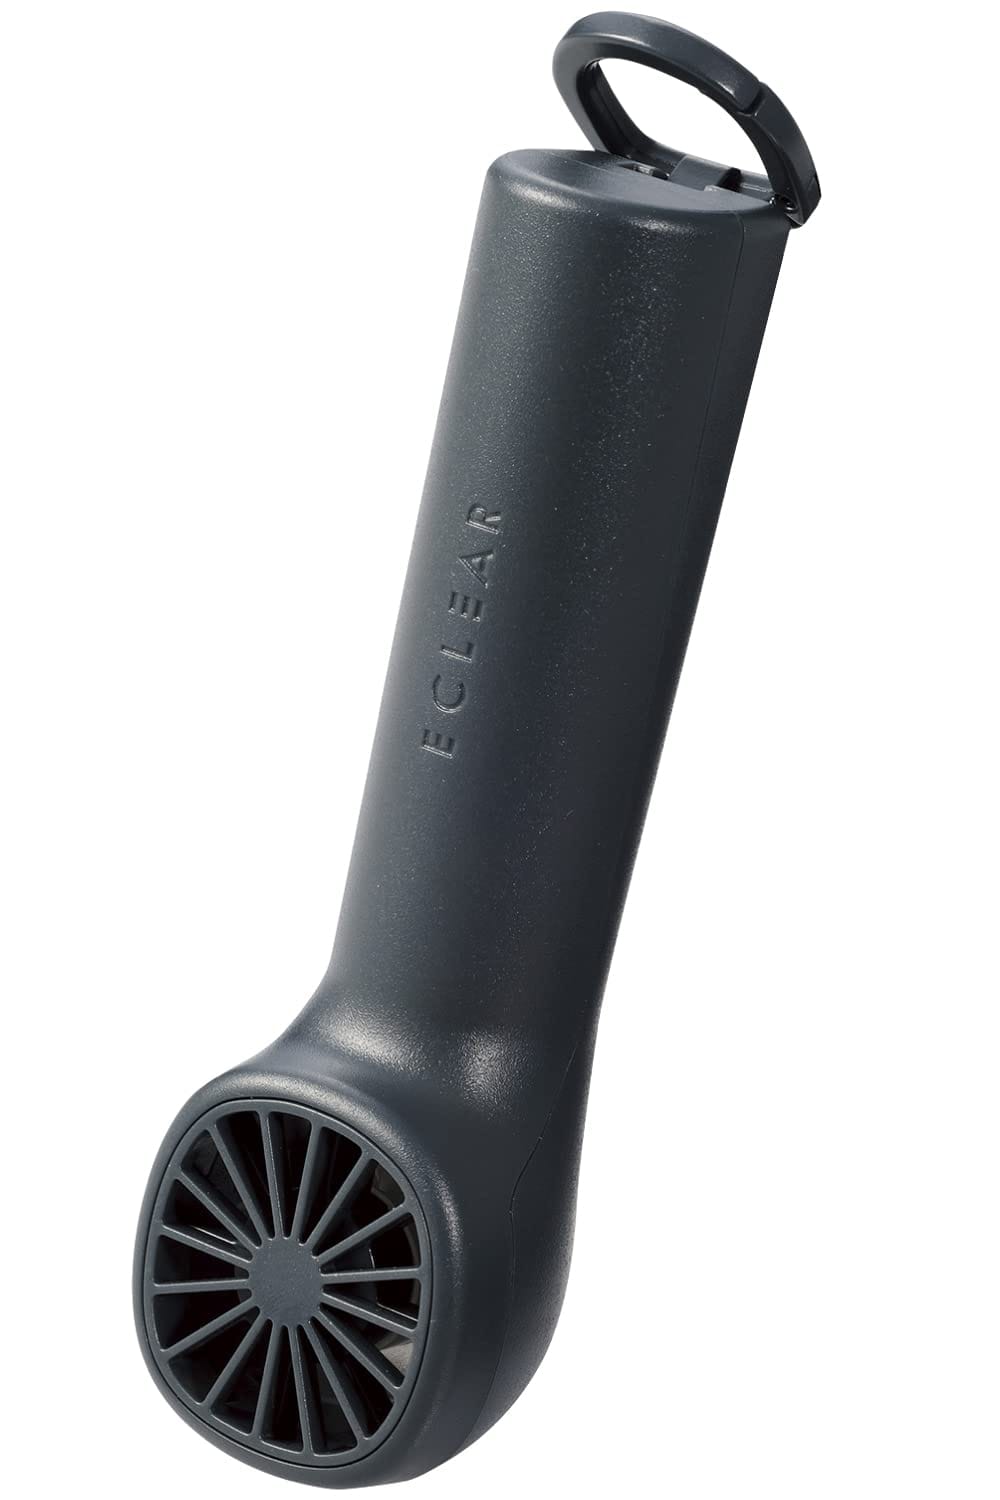 エレコム ハンディファン USB扇風機 スポットファン カラビナ付 風量調節可能 コンパクト ピンポイント送風 ダスティグレー FAN-U233GY